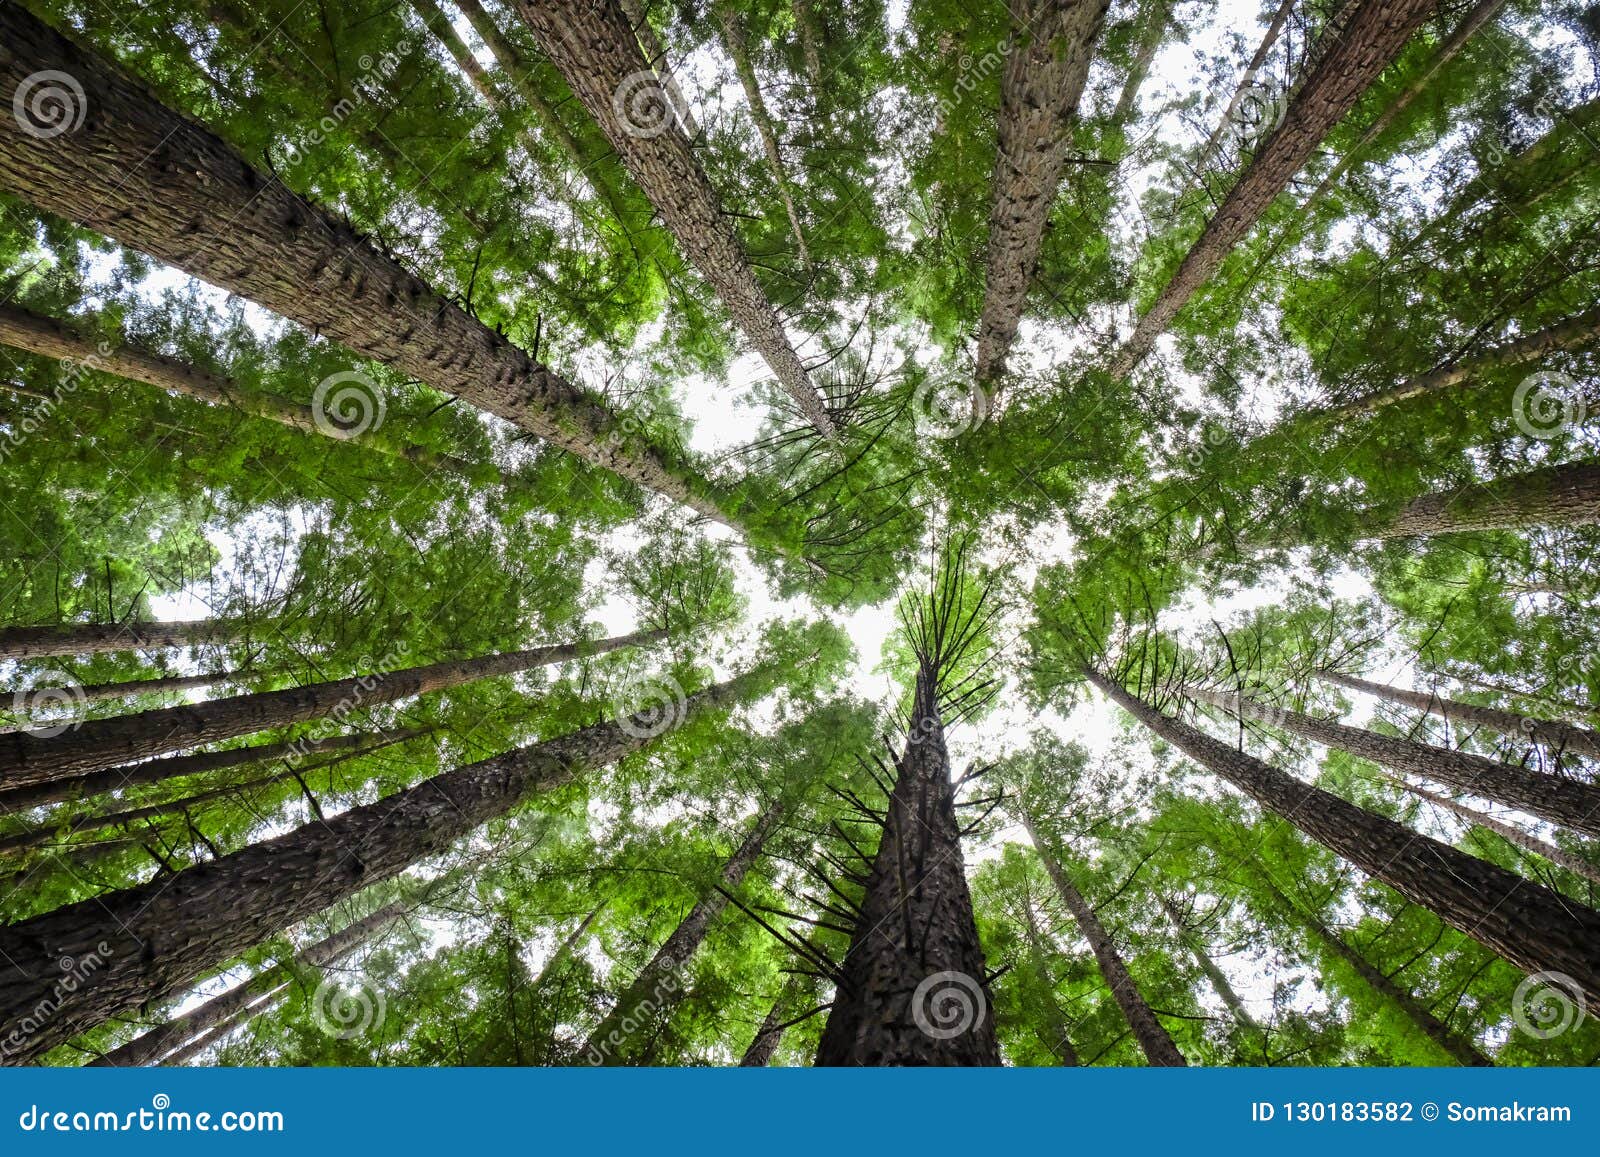 tree canopy